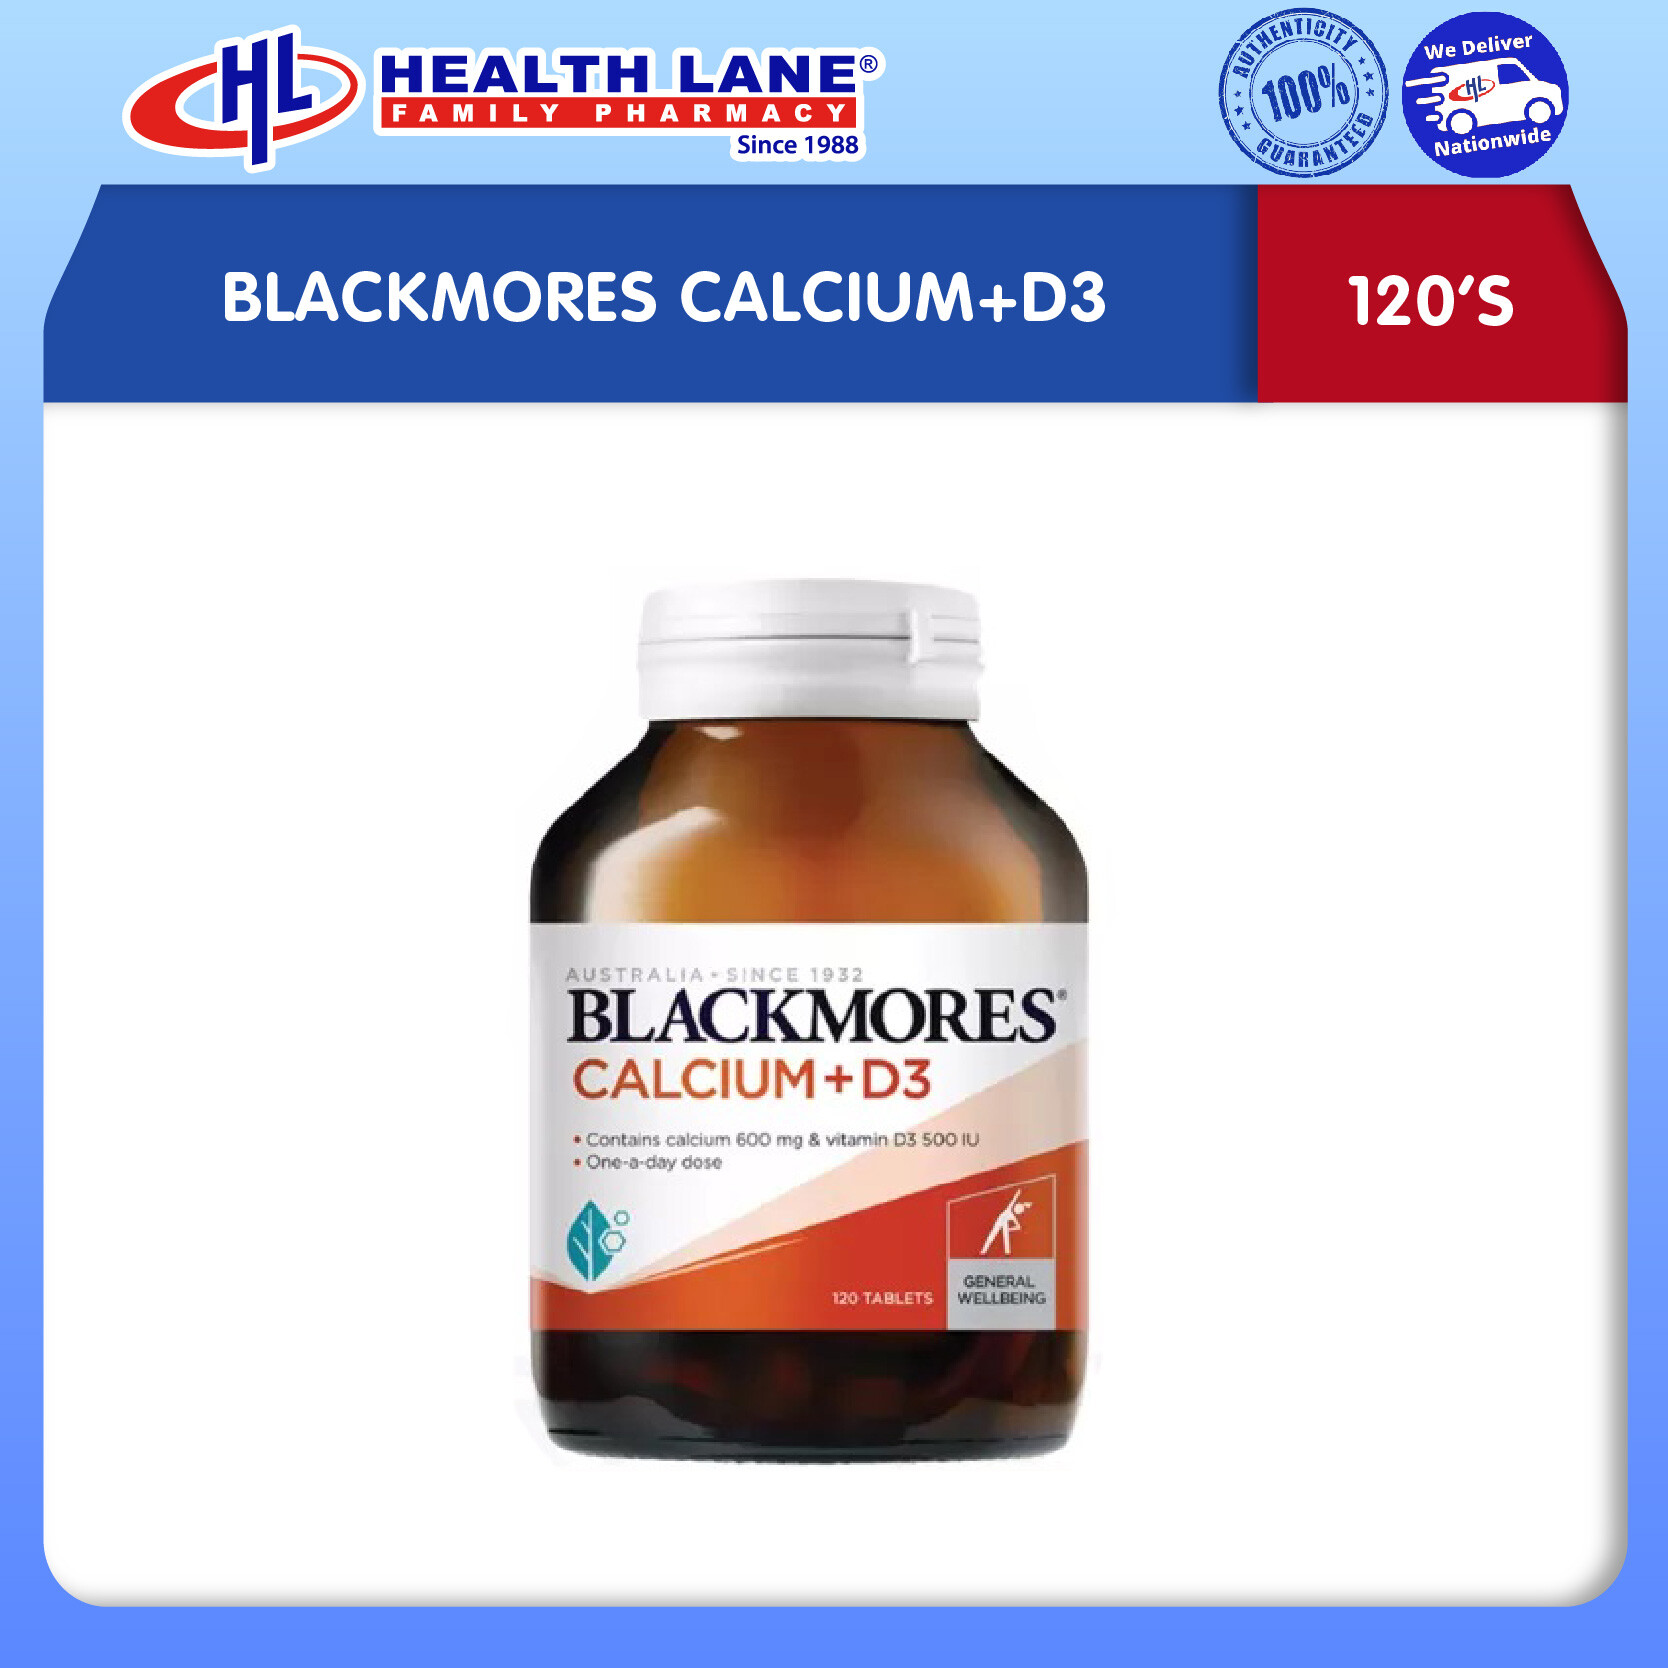 BLACKMORES CALCIUM+D3 (120'S)